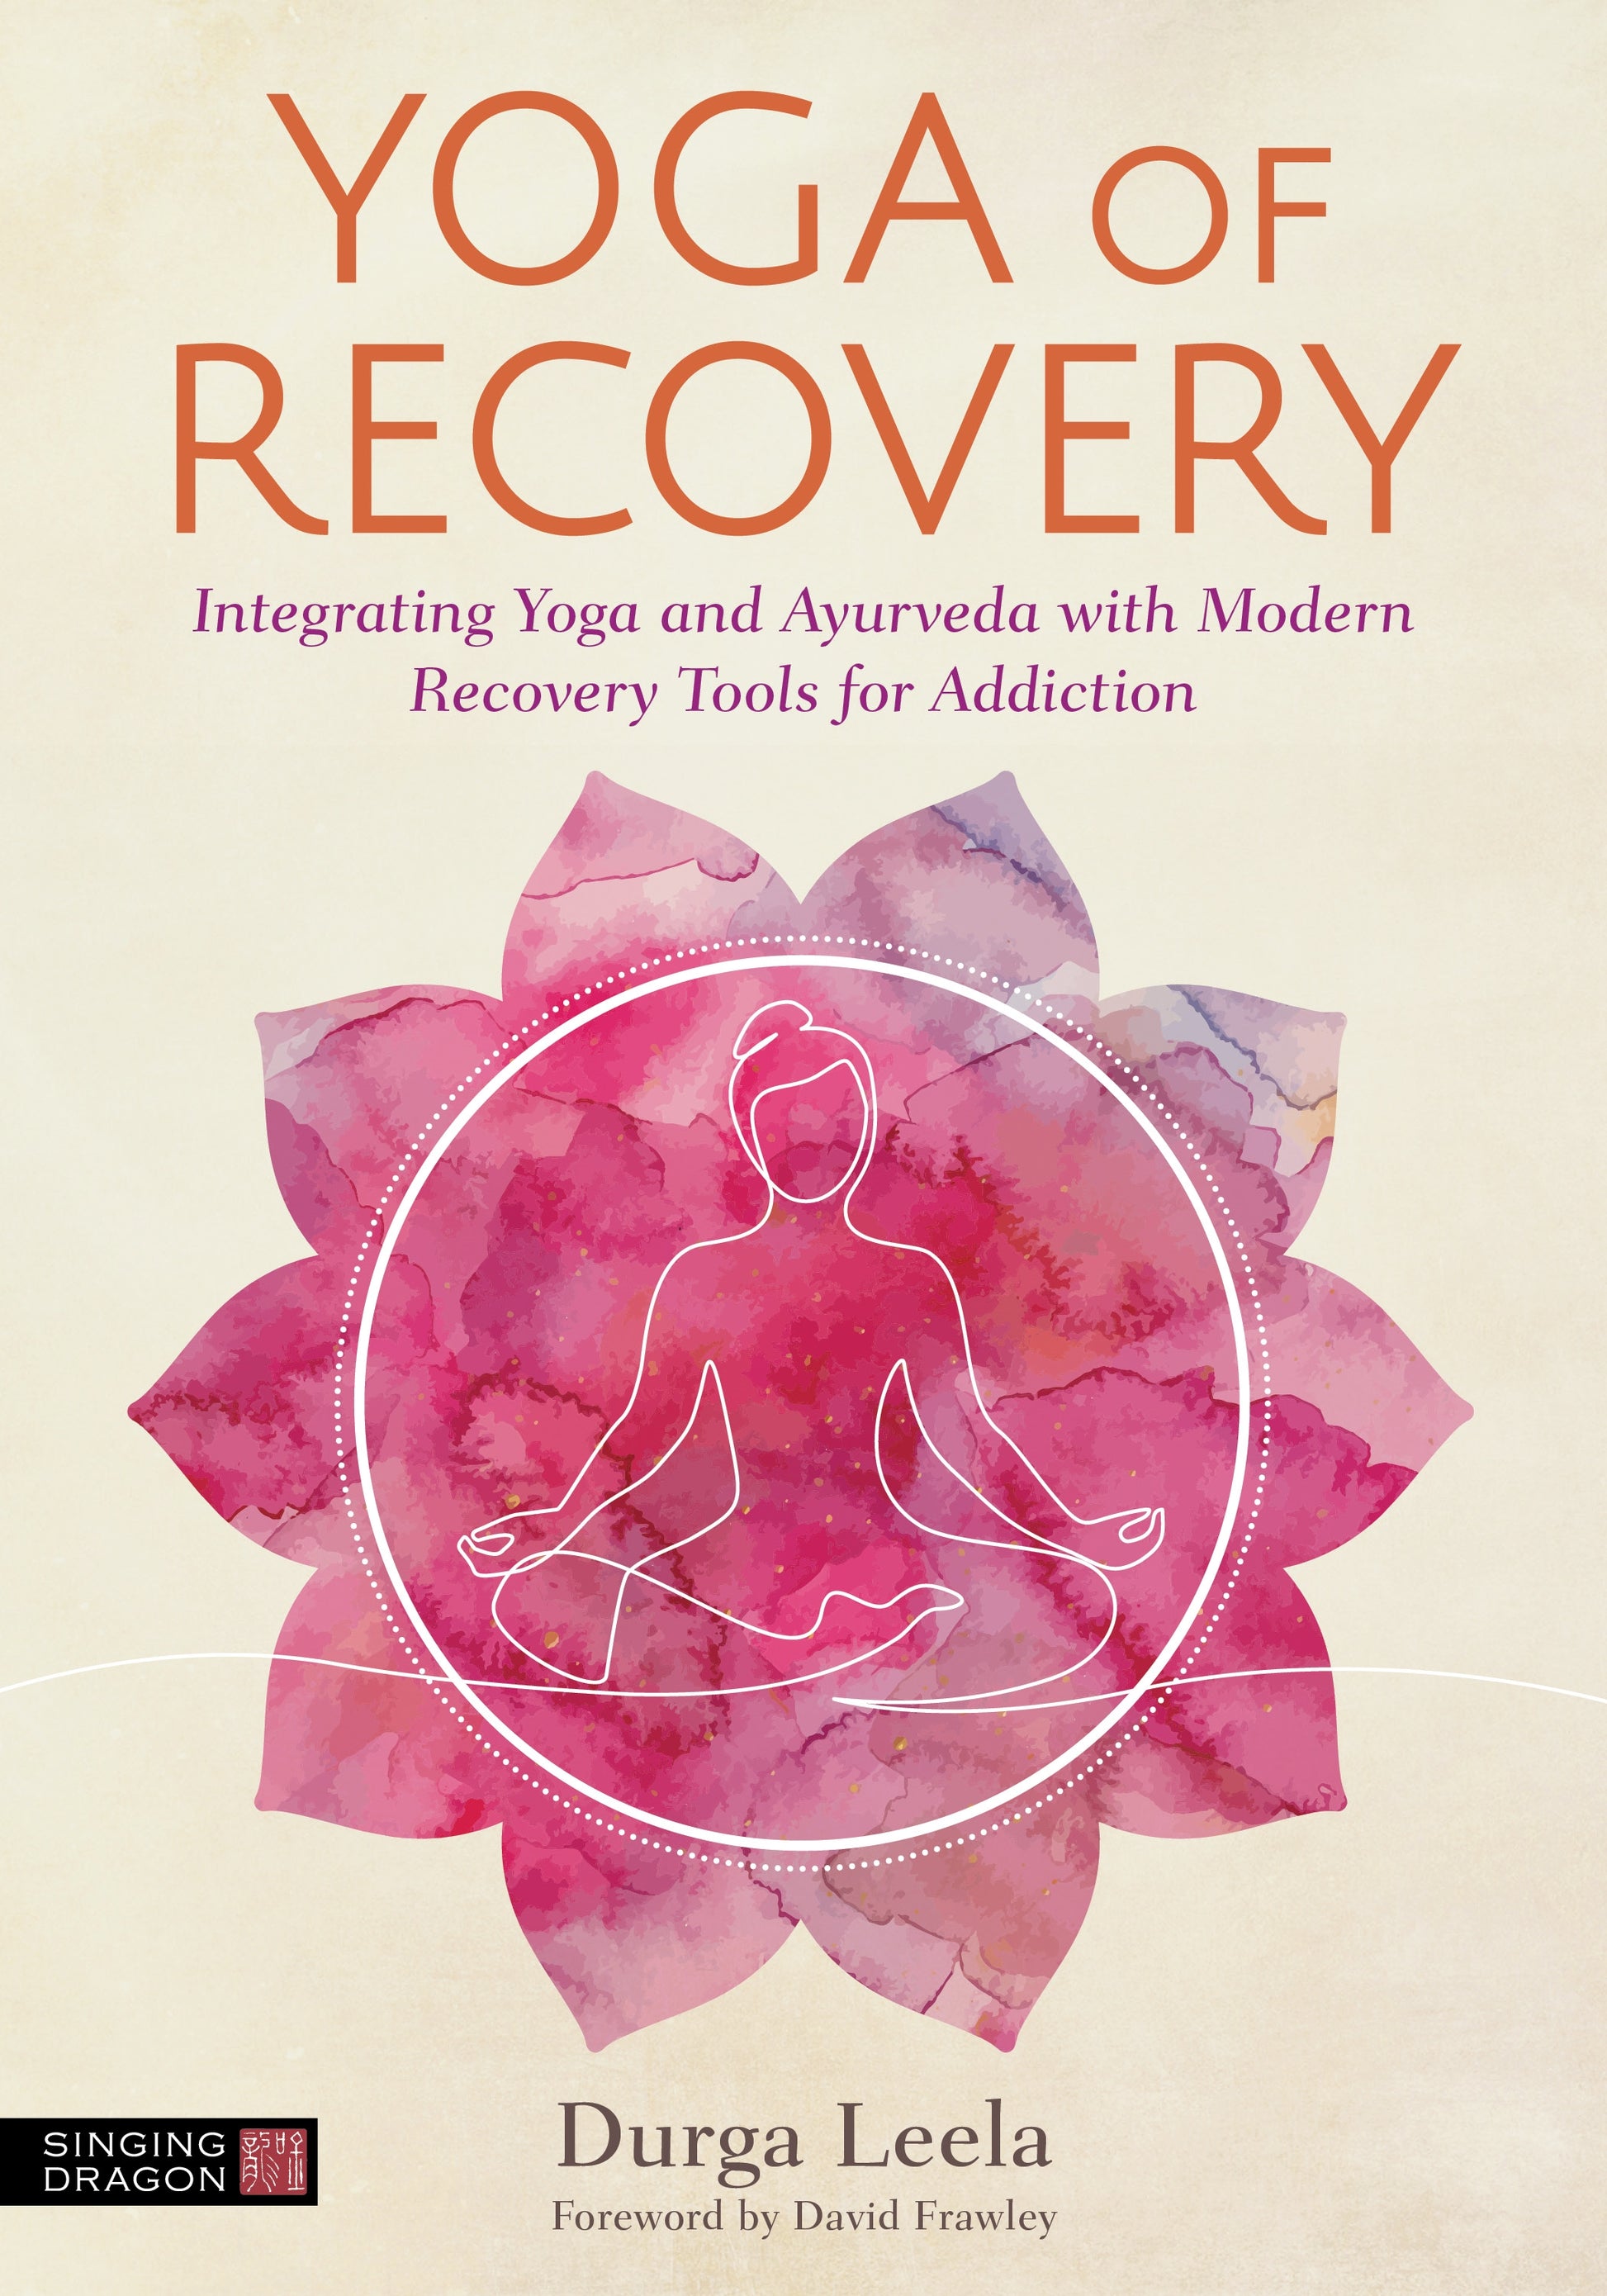 Yoga of Recovery by Durga Leela, David Frawley